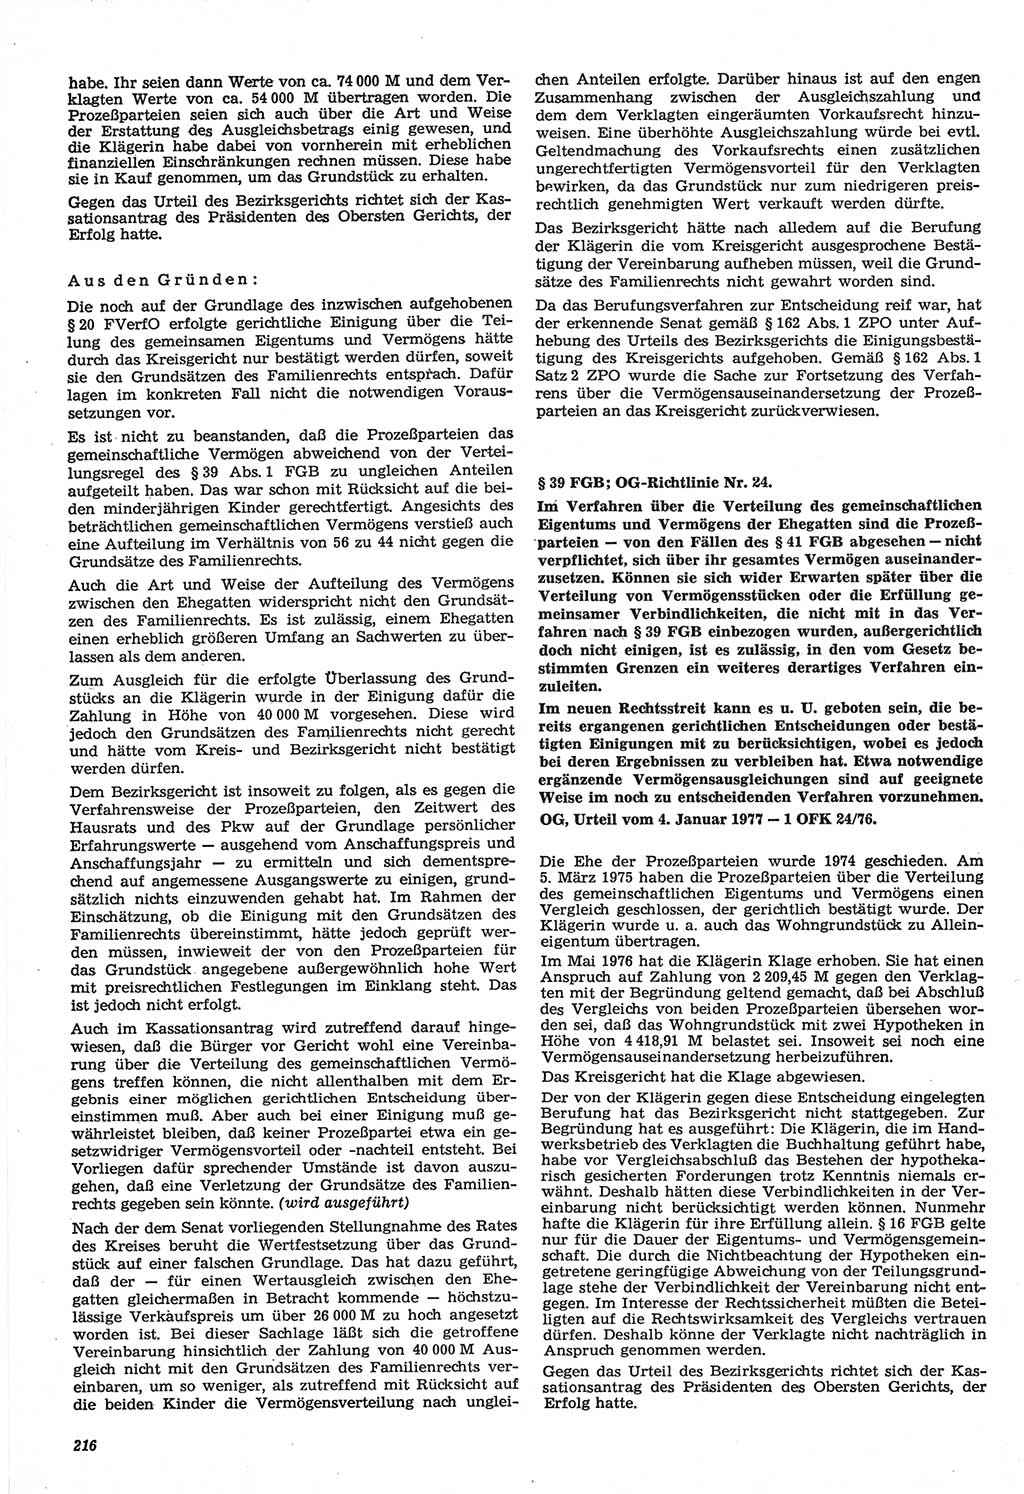 Neue Justiz (NJ), Zeitschrift für Recht und Rechtswissenschaft-Zeitschrift, sozialistisches Recht und Gesetzlichkeit, 31. Jahrgang 1977, Seite 216 (NJ DDR 1977, S. 216)